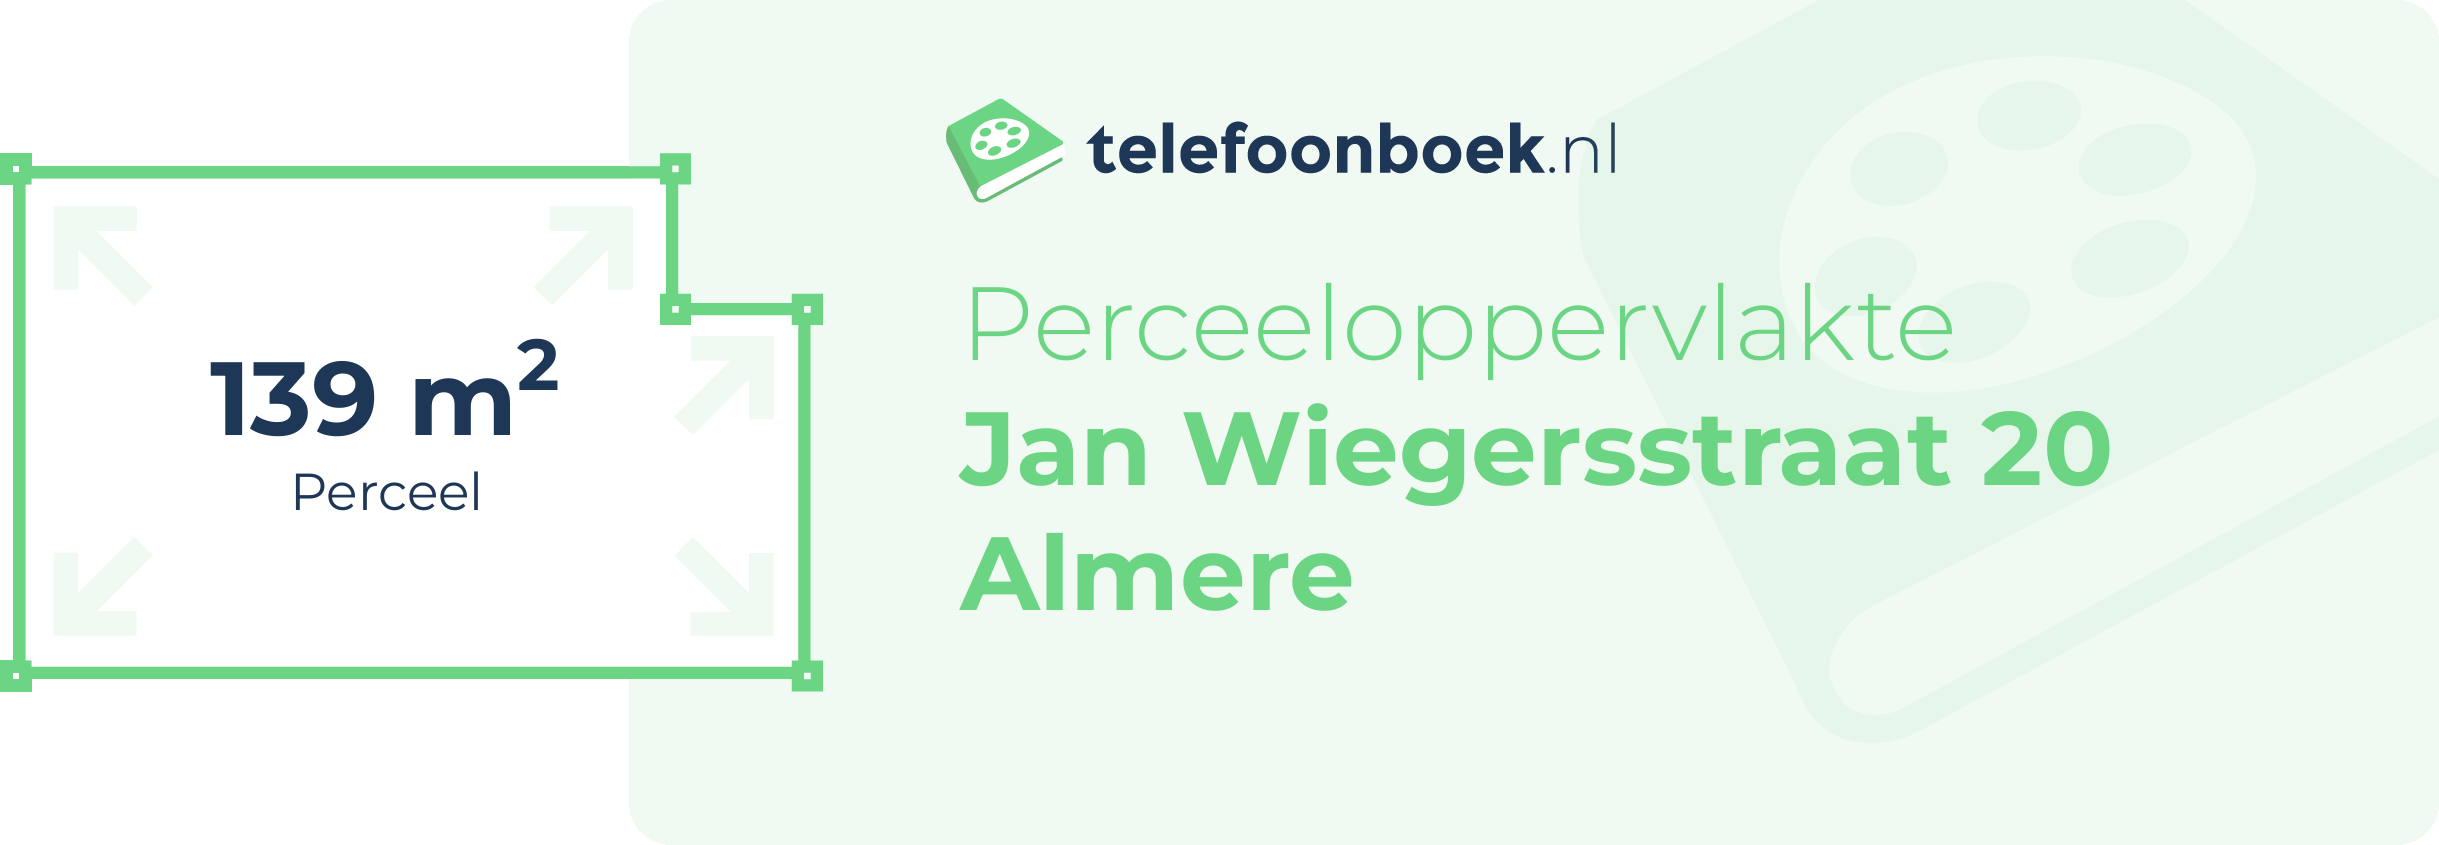 Perceeloppervlakte Jan Wiegersstraat 20 Almere